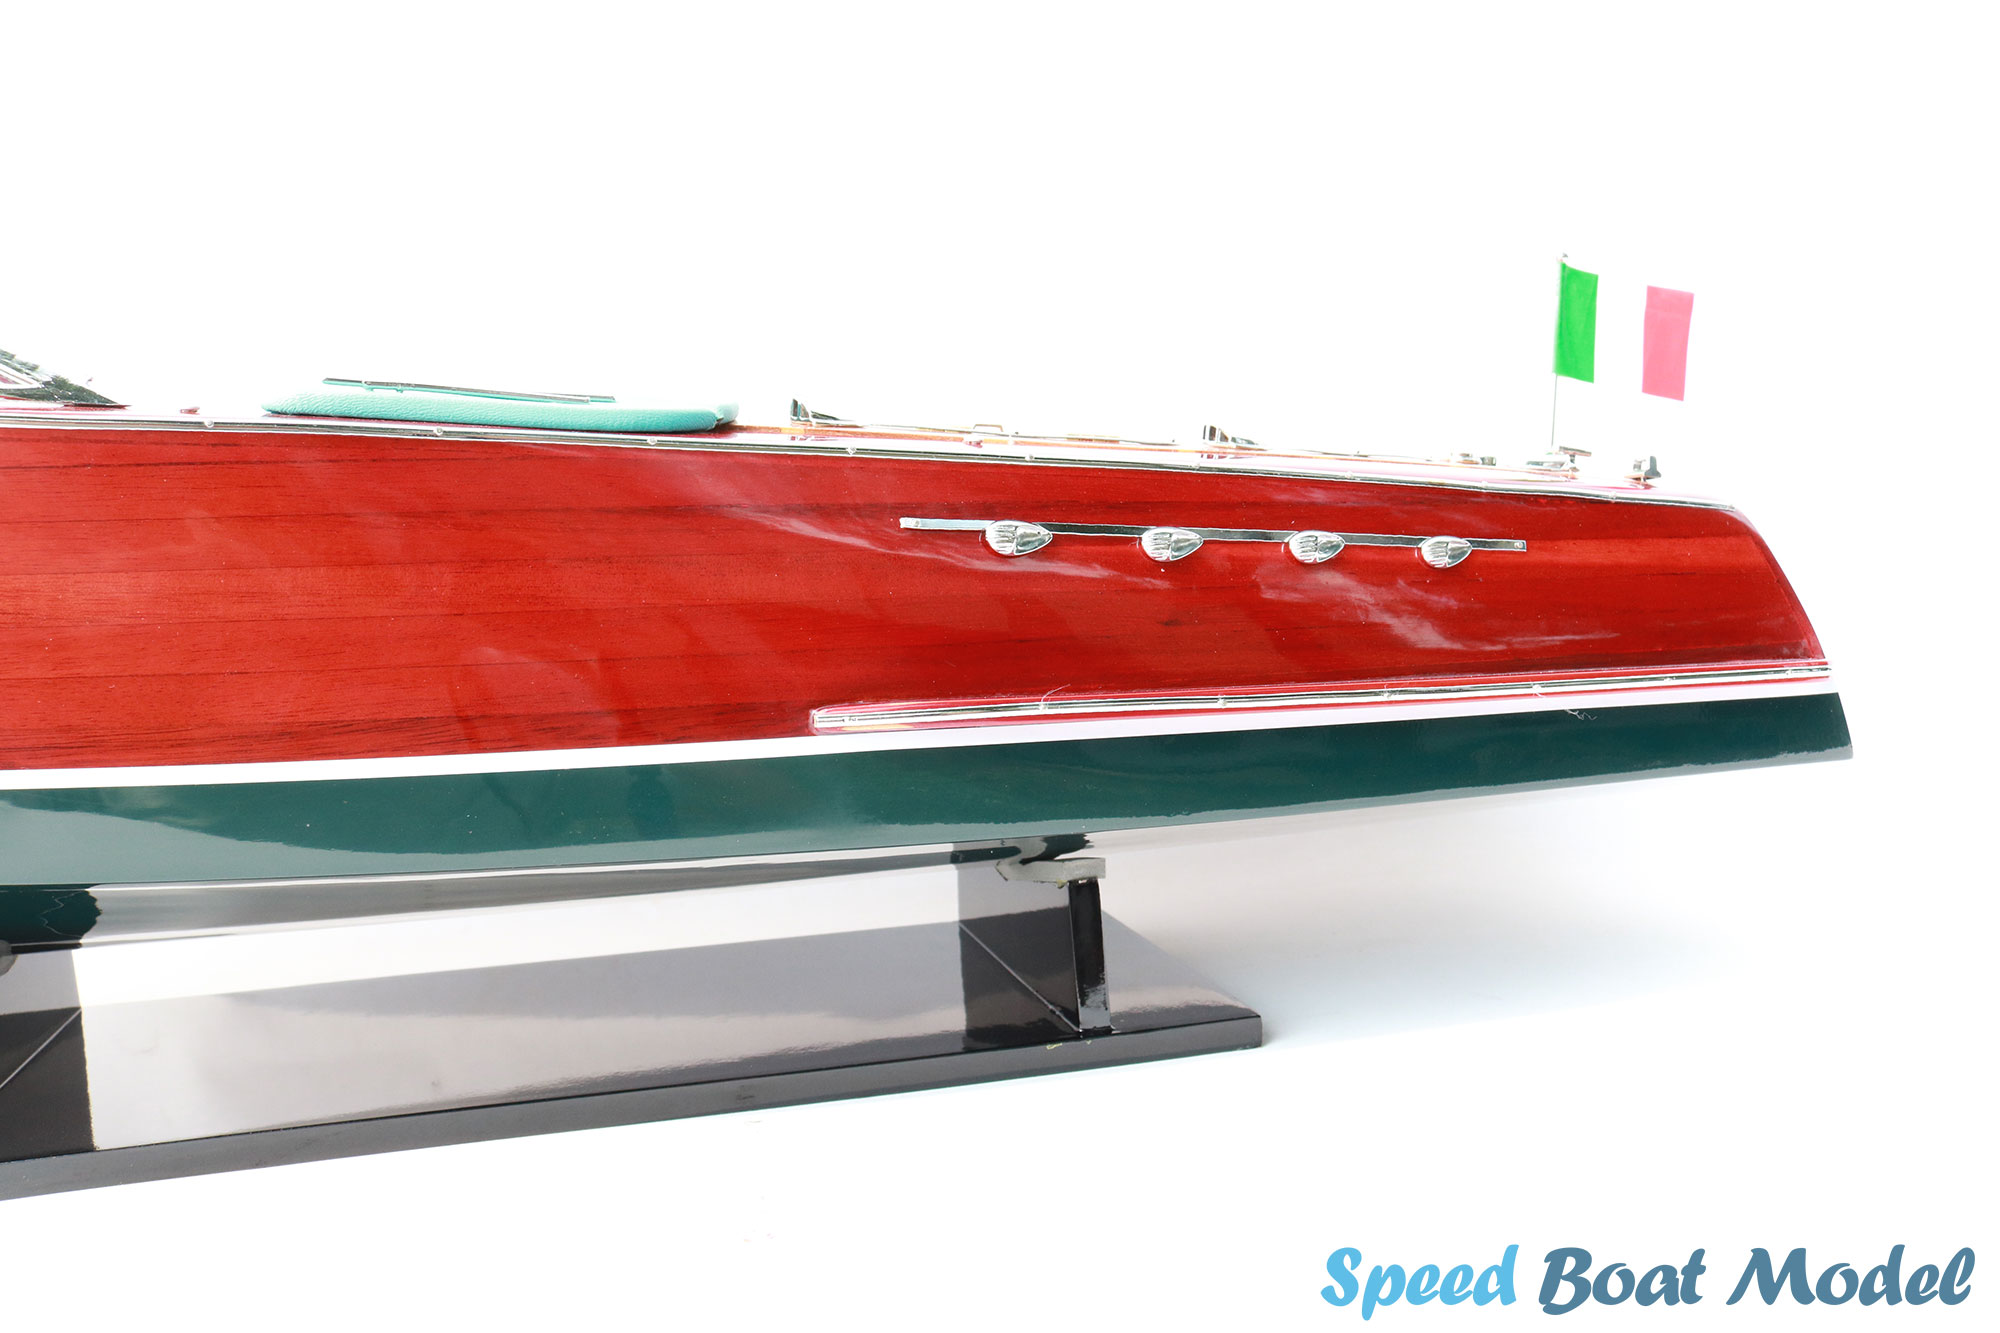 Super Riva Tritone Classic Speed Boat Model 34.2